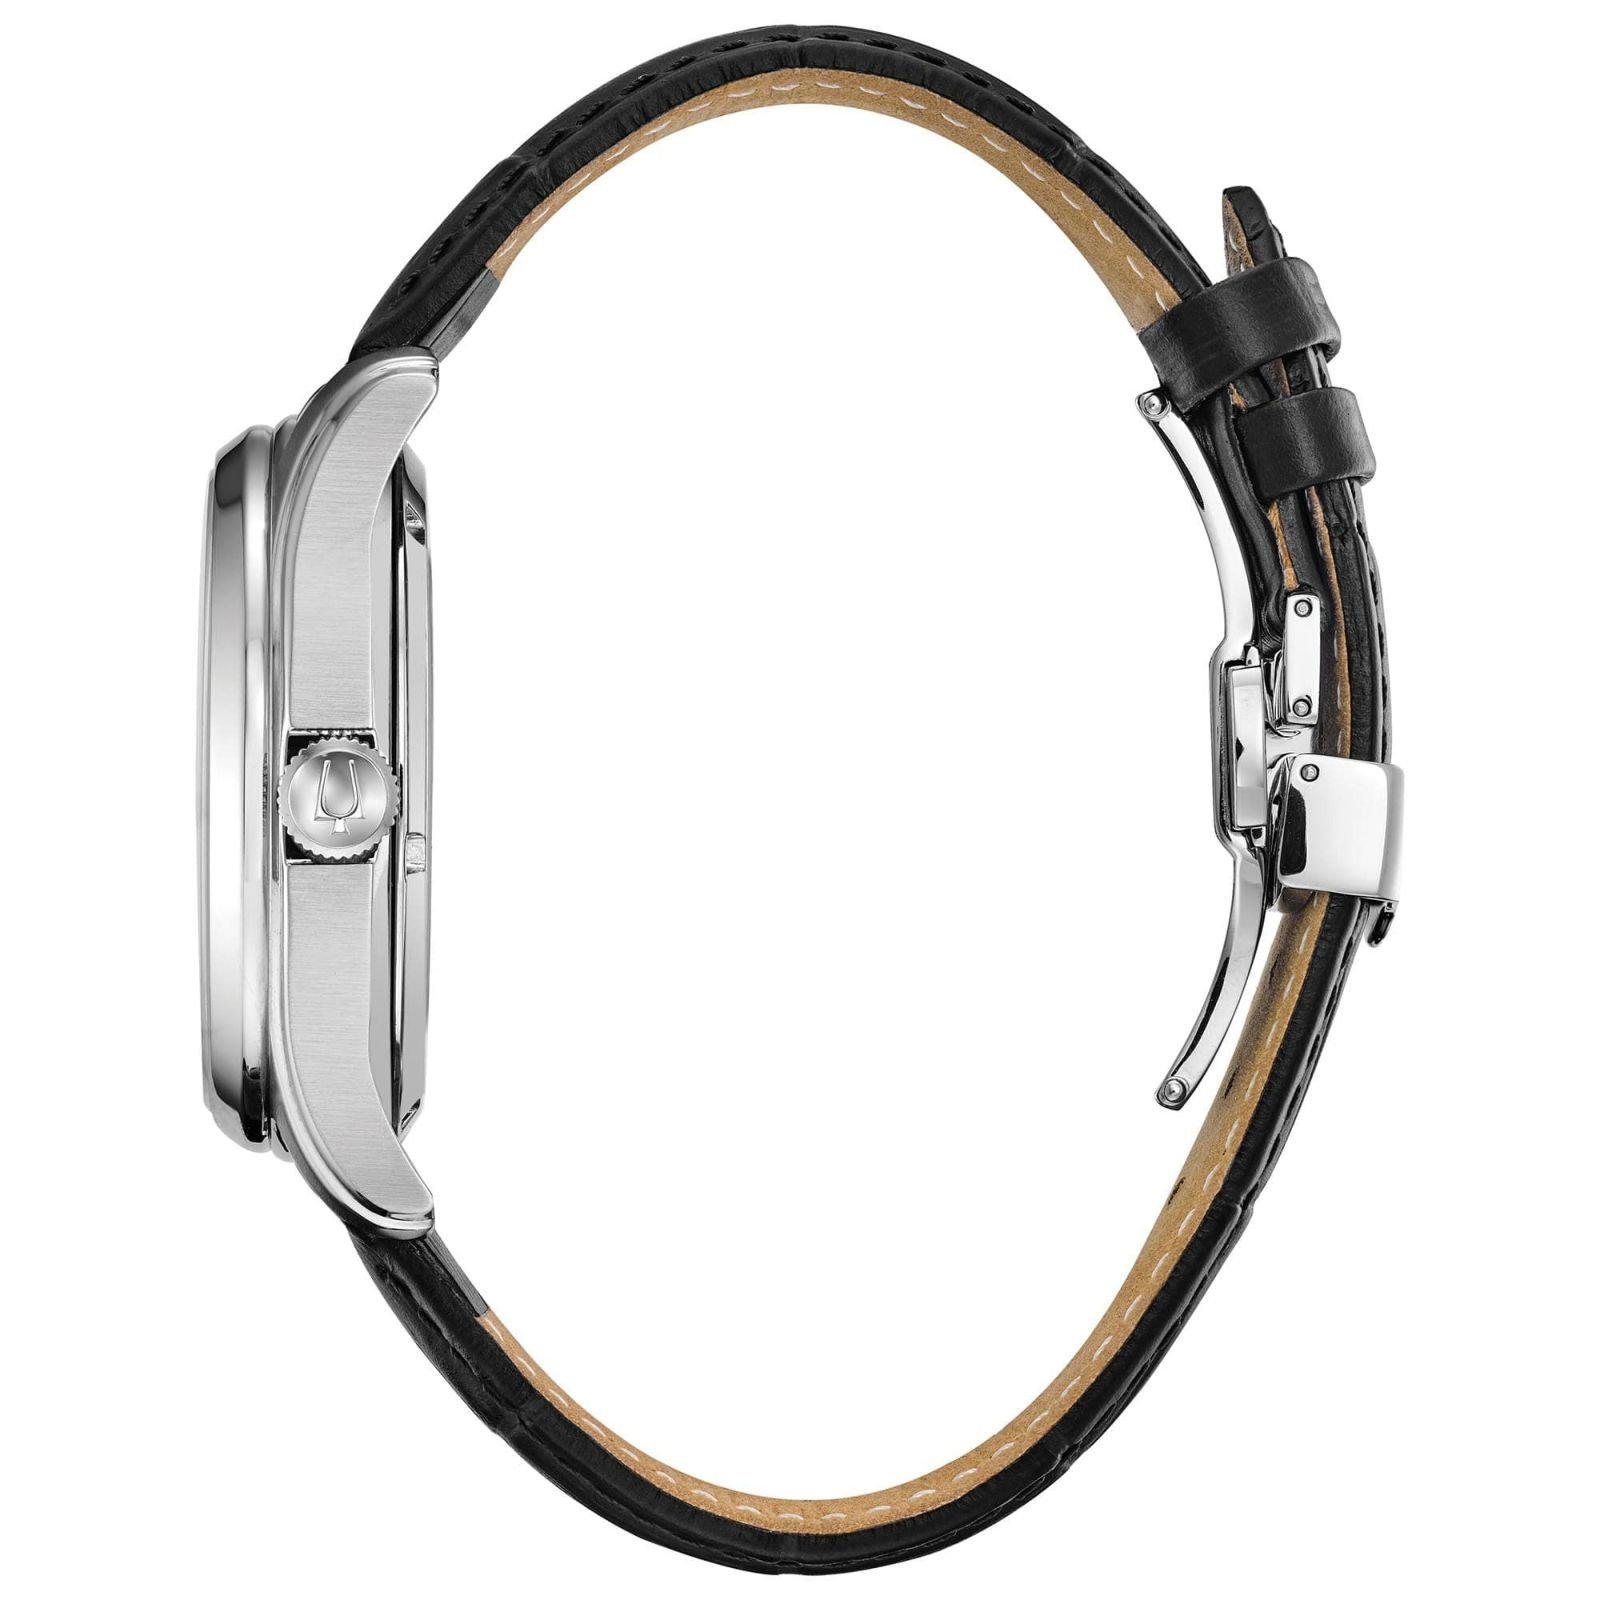 新品 ブローバ 自動巻き腕時計 オープンハート ロングパワーリザーブ 限定1本ほーねっとの時計